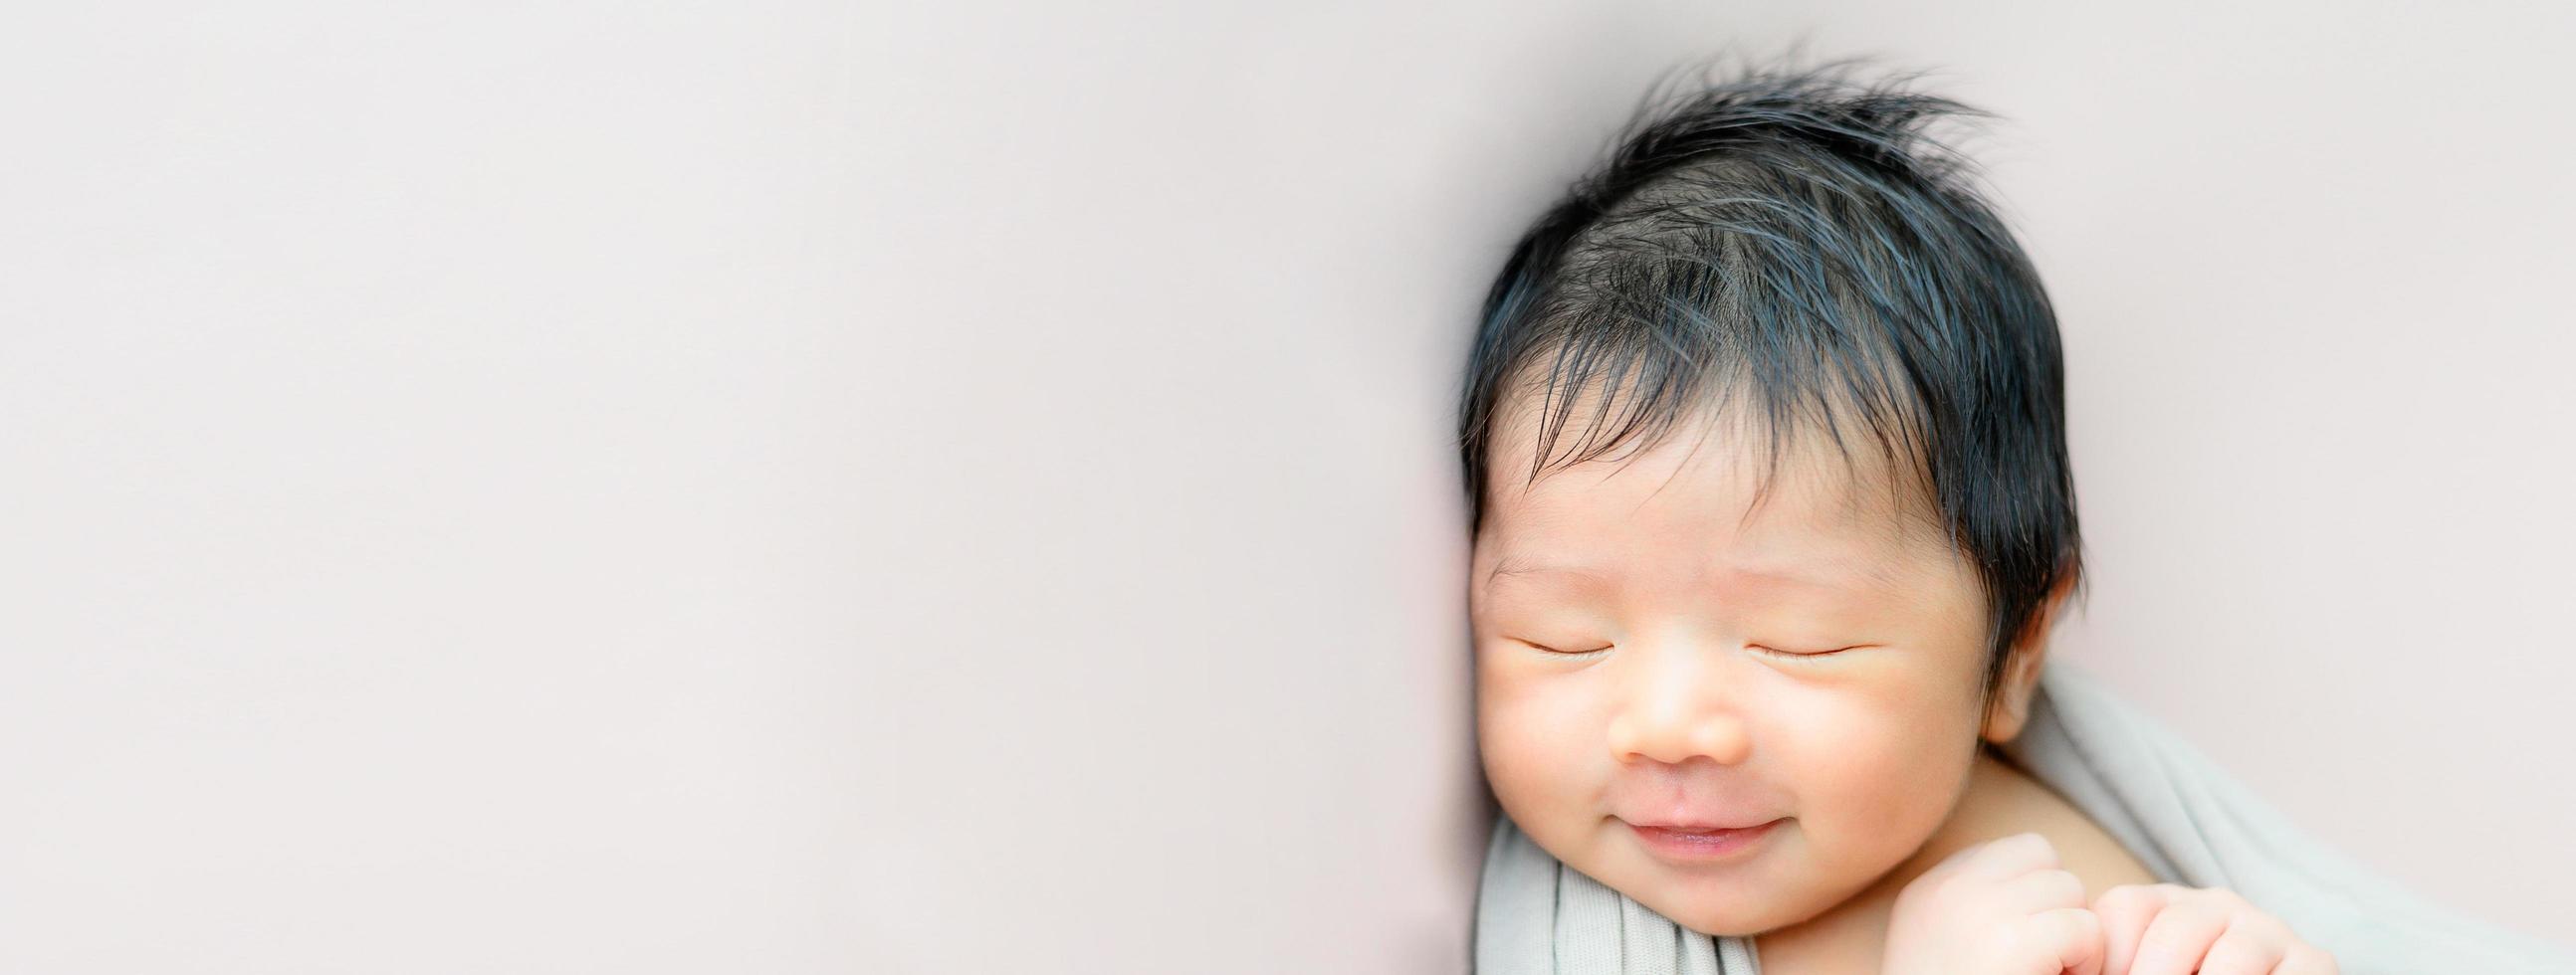 Asian newborn baby sleeping photo